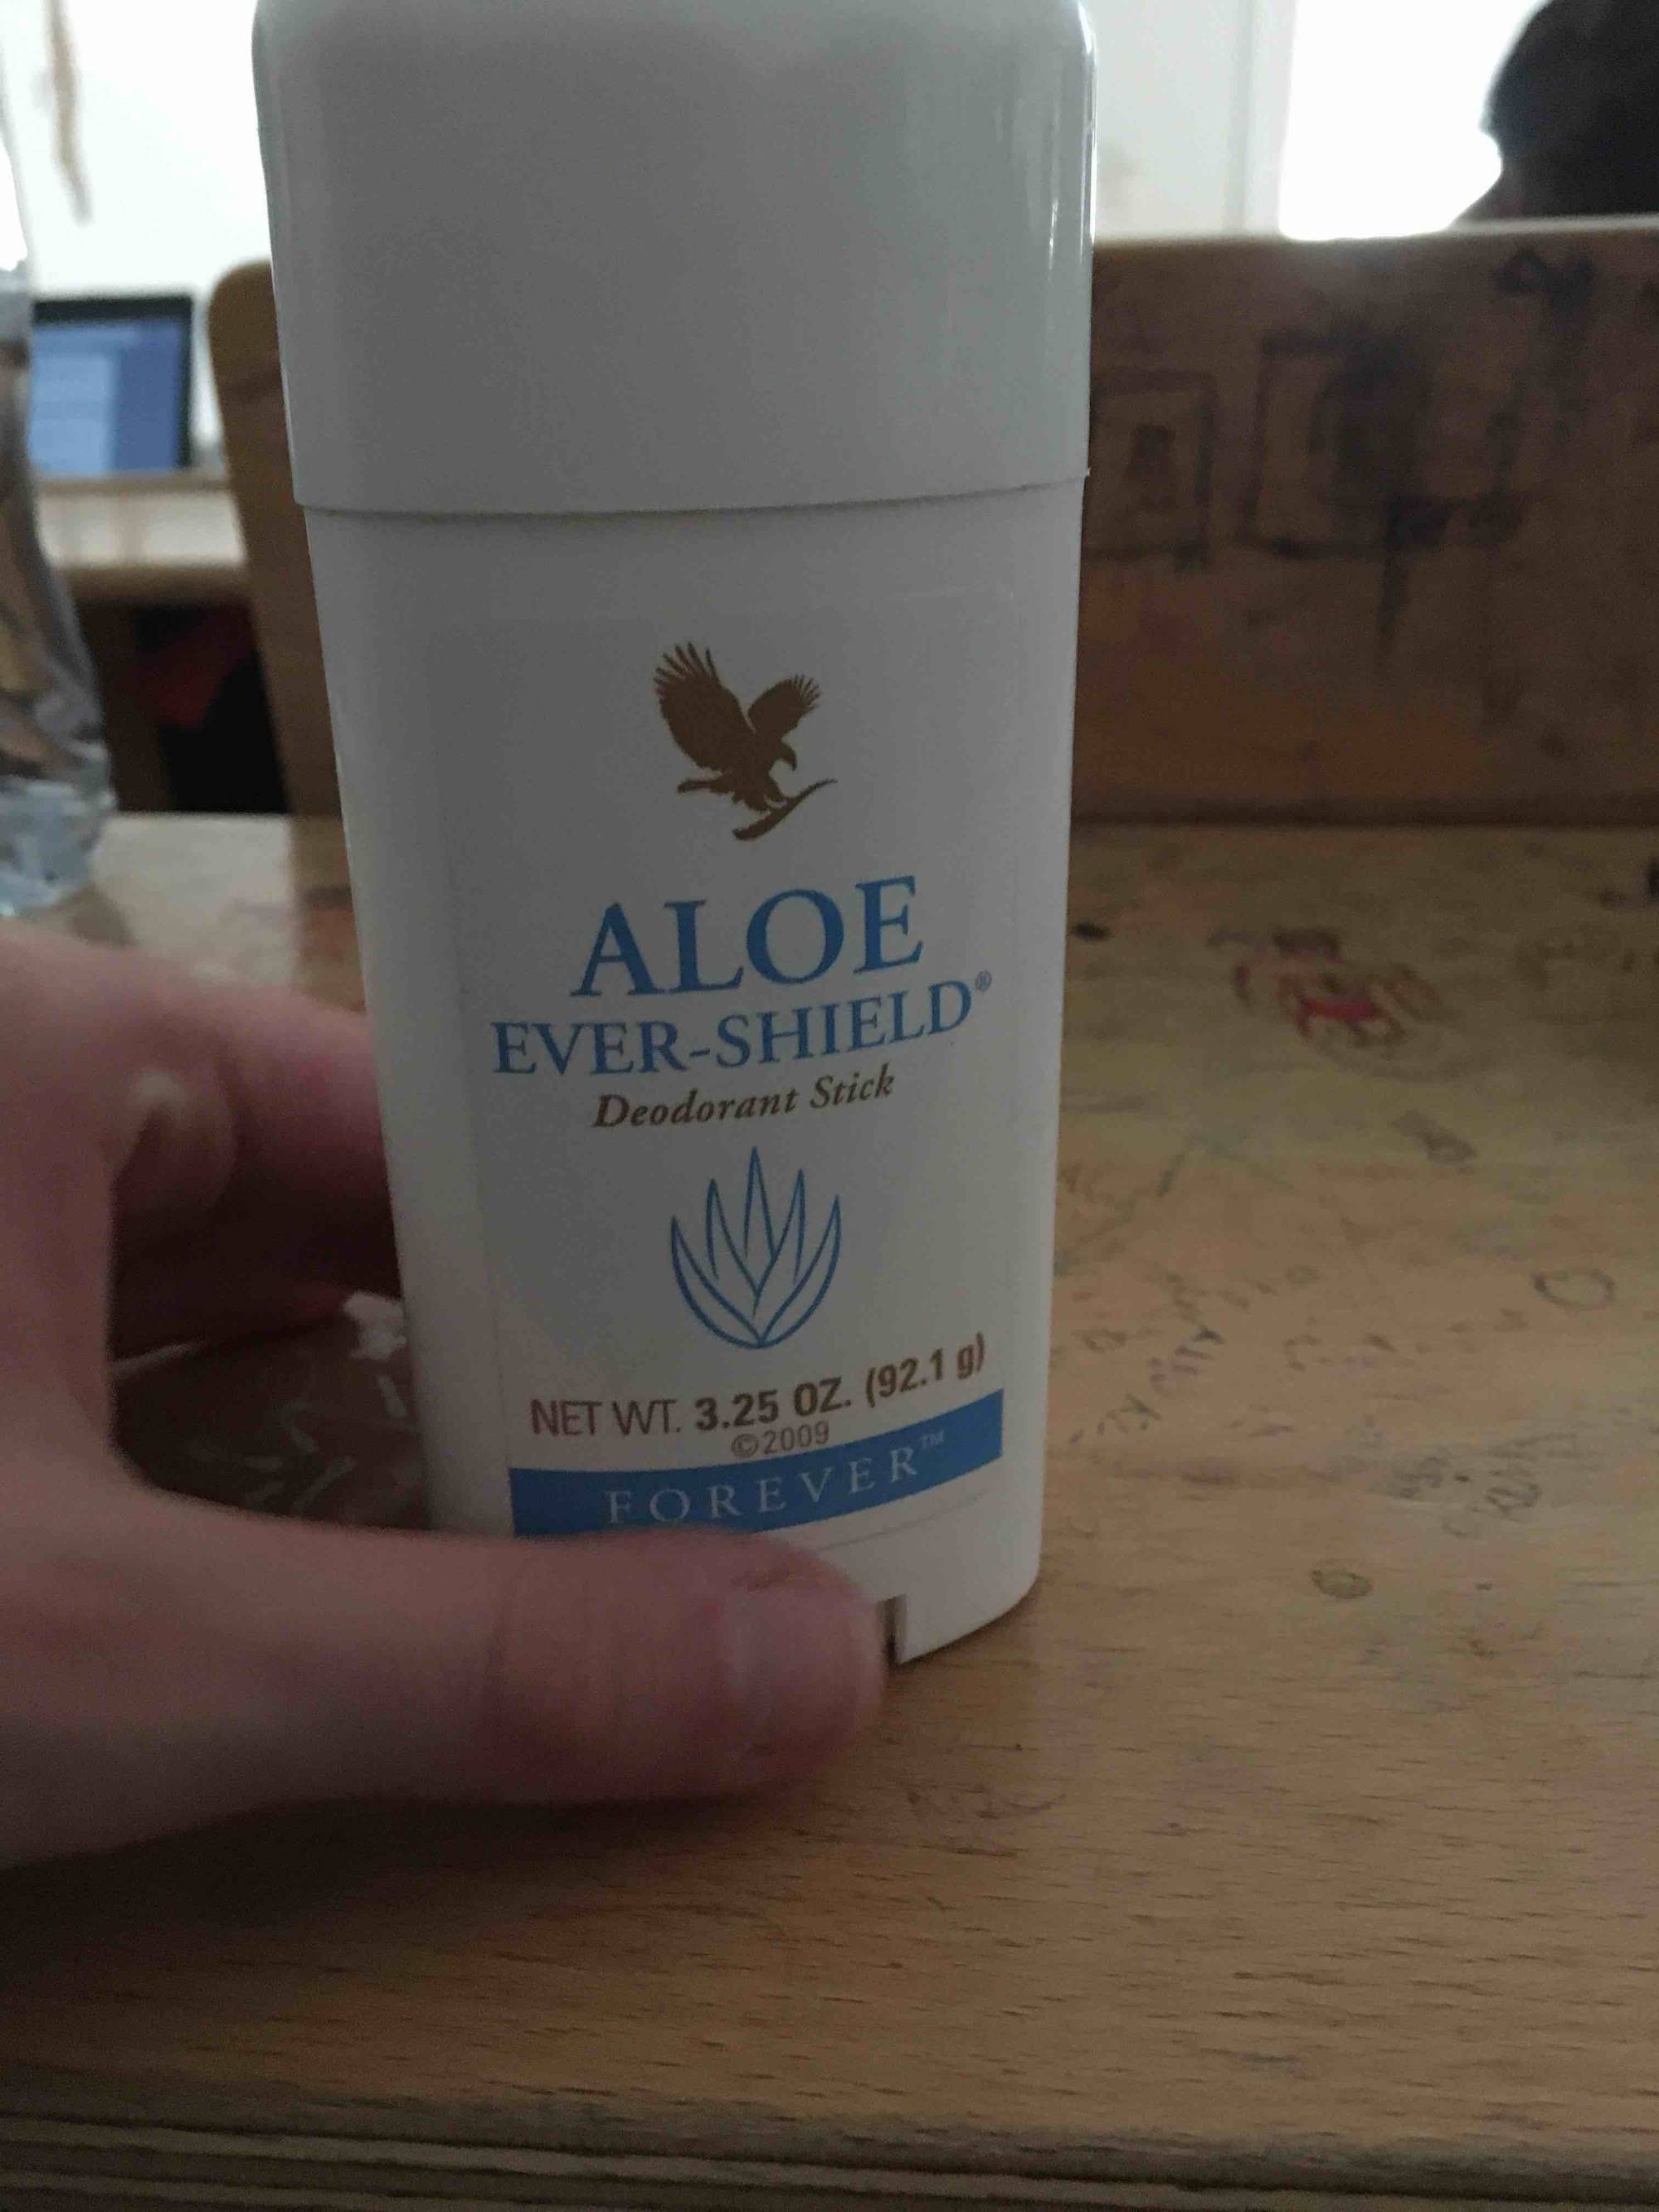 FOREVER - Aloé ever-shield - Déodorant stick